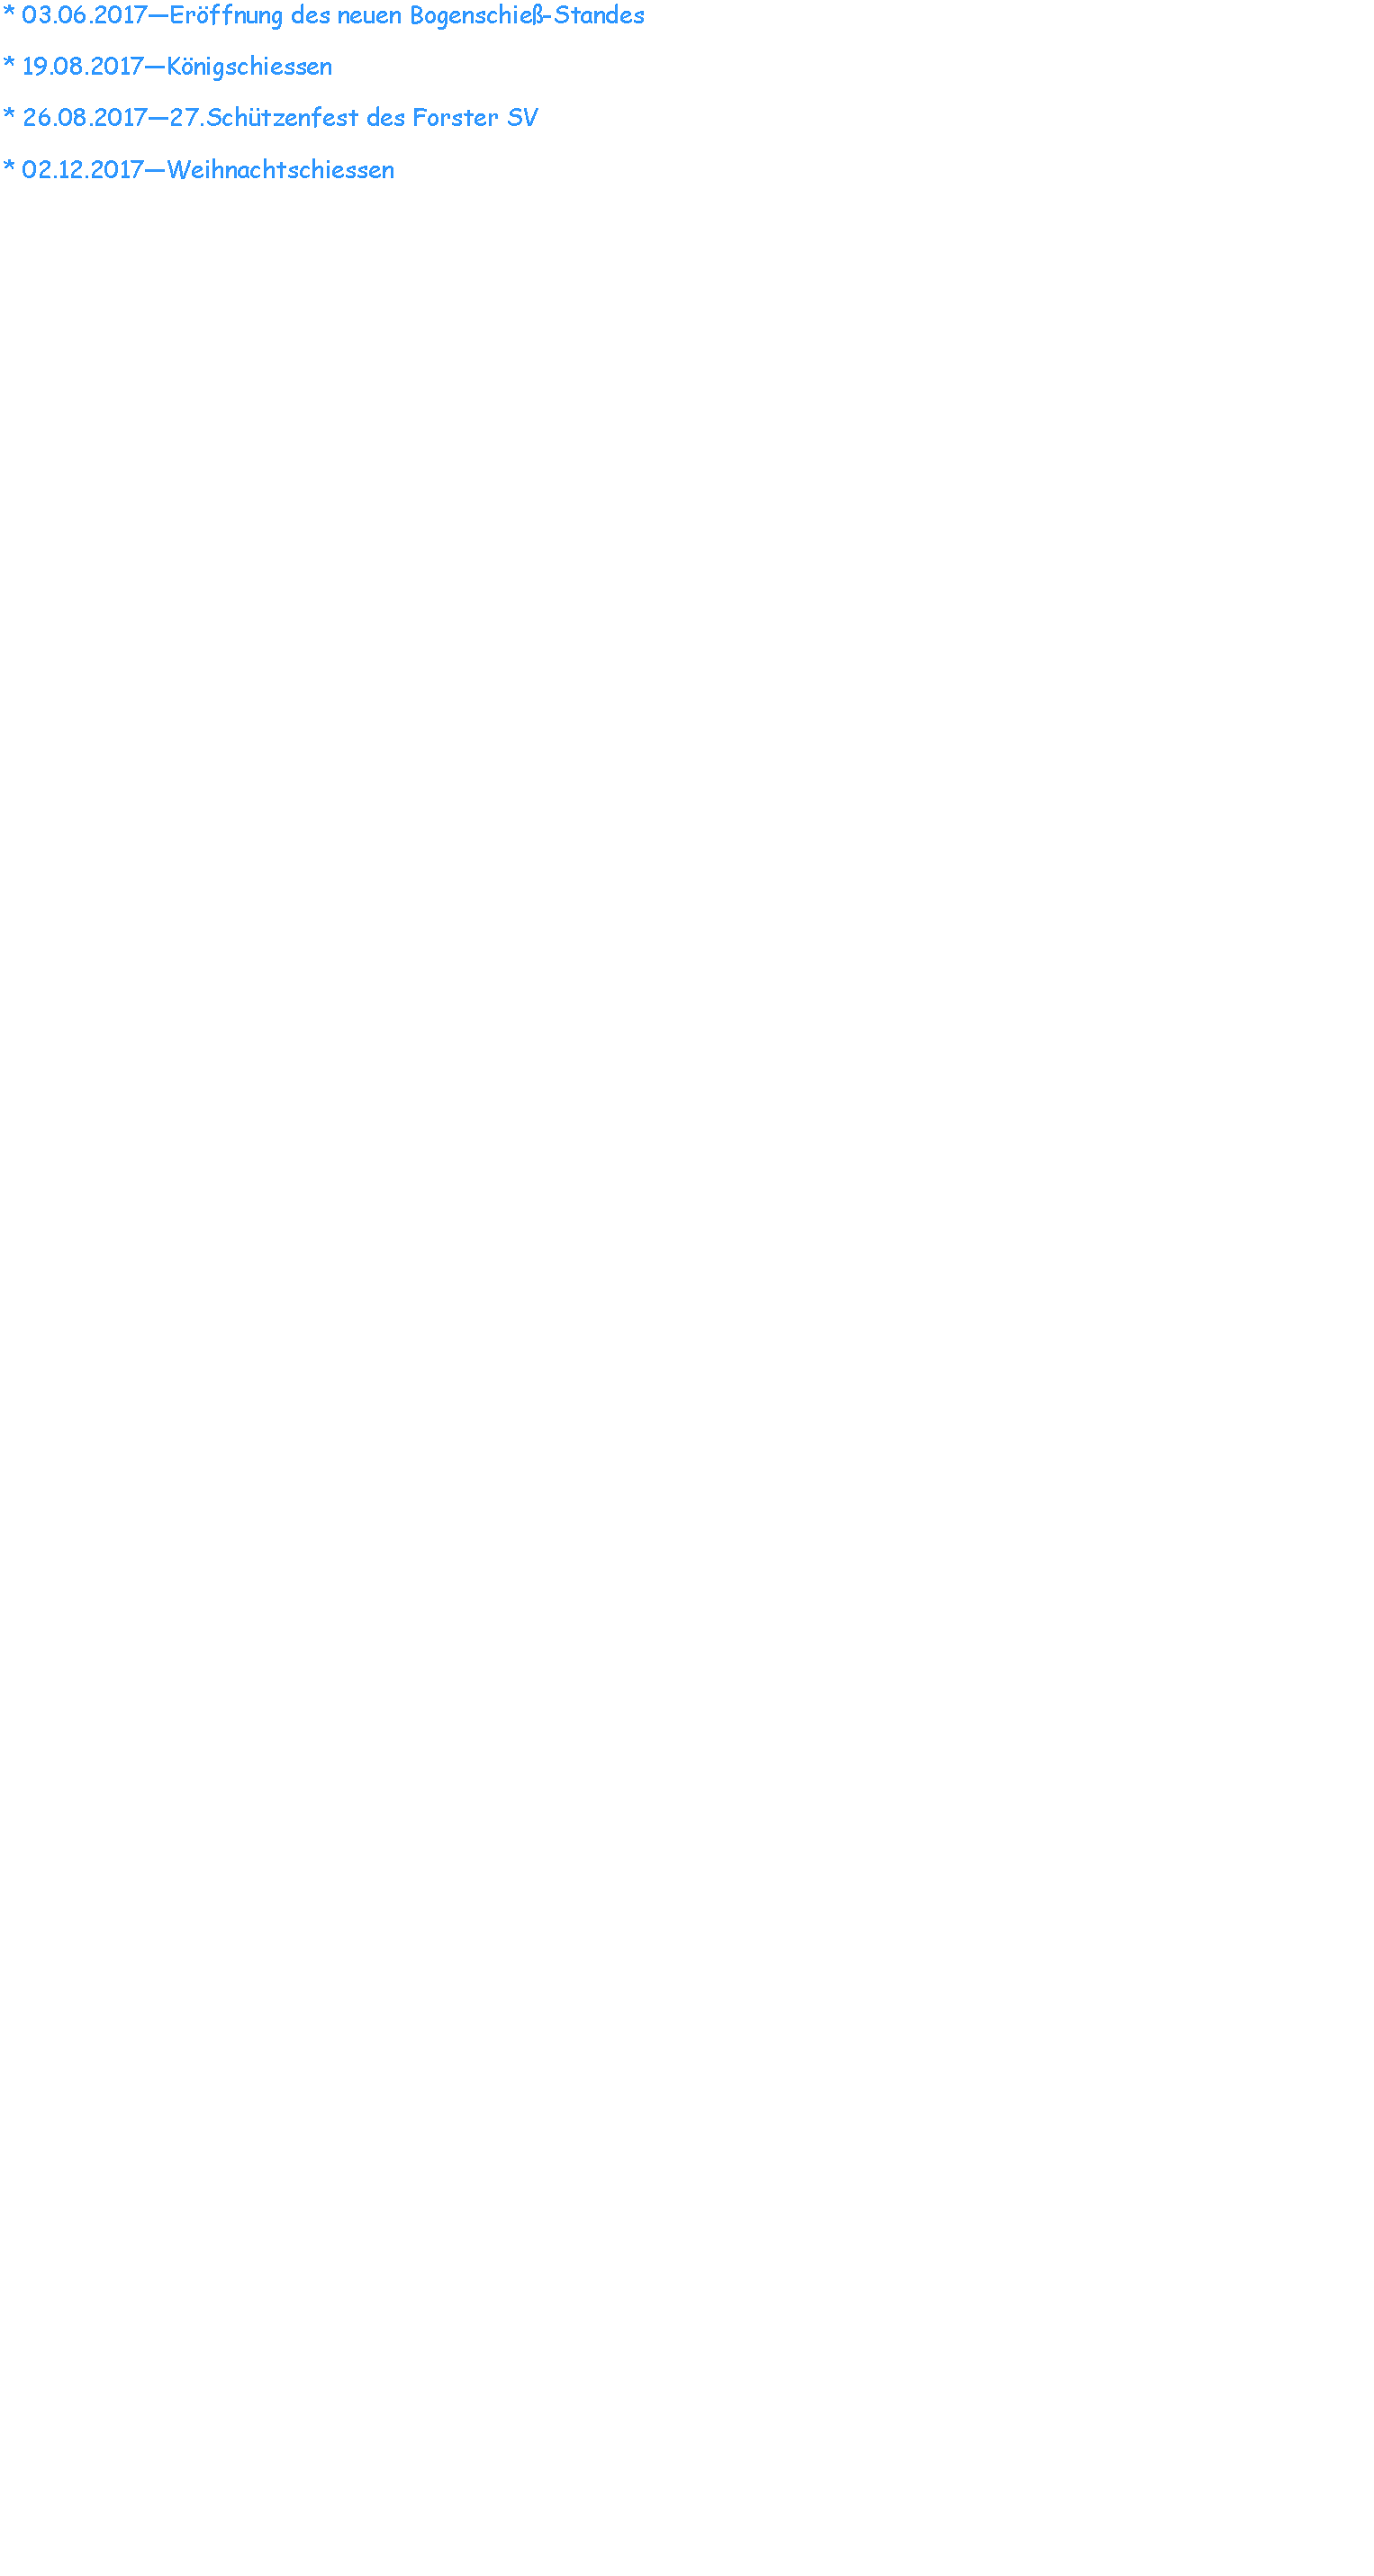 Textfeld: * 03.06.2017—Eröffnung des neuen Bogenschieß-Standes* 19.08.2017—Königschiessen* 26.08.2017—27.Schützenfest des Forster SV* 02.12.2017—Weihnachtschiessen